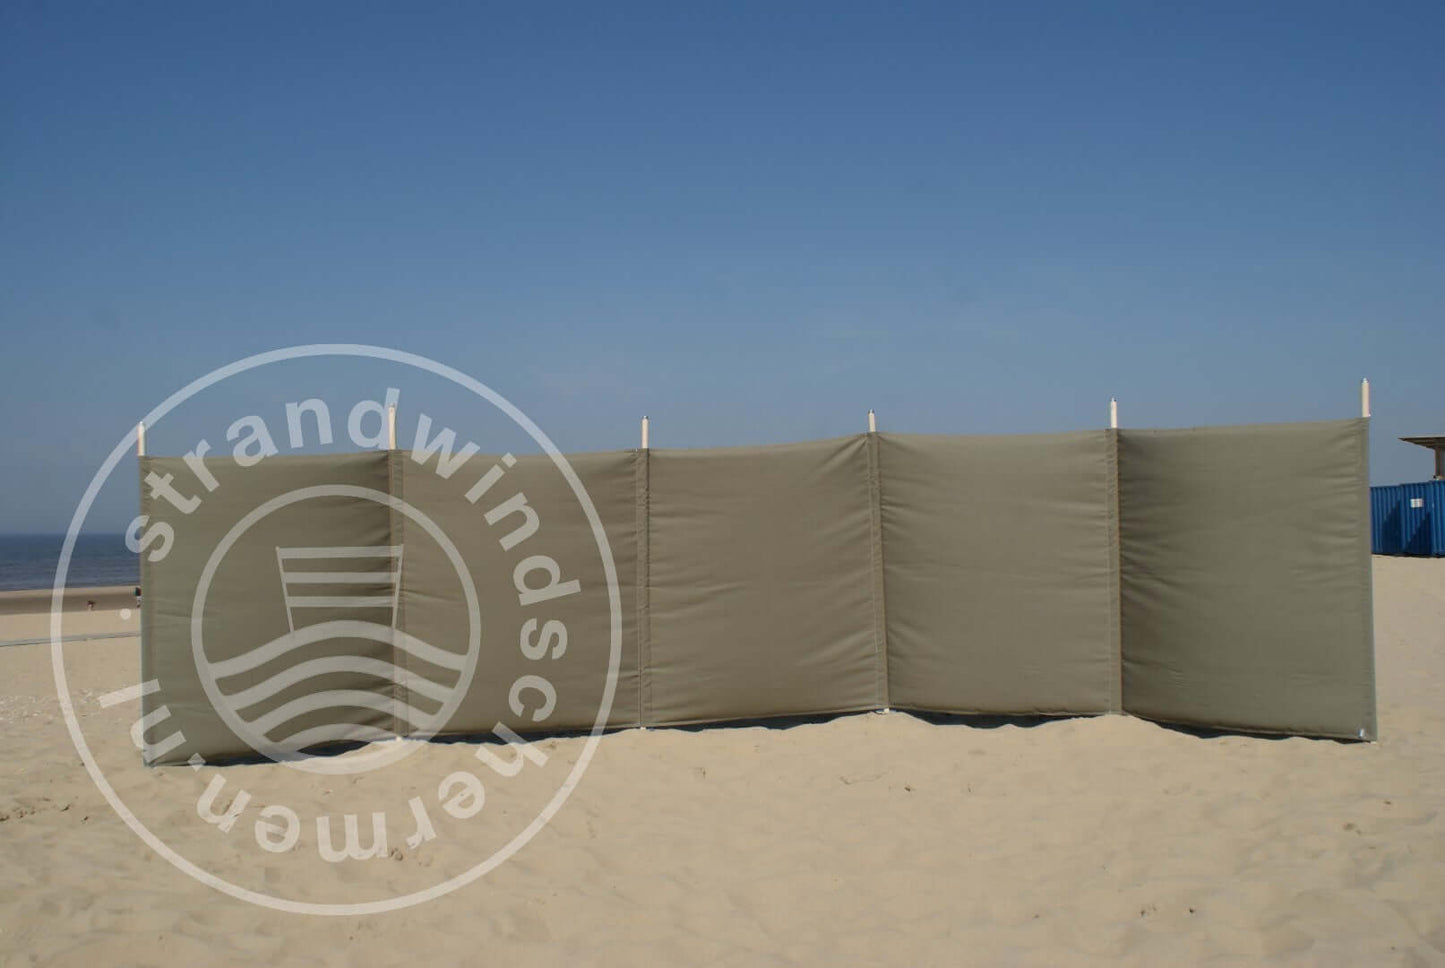 Tuch-6m-Einfaches taupefarbenes Dralon-Windschutztuch